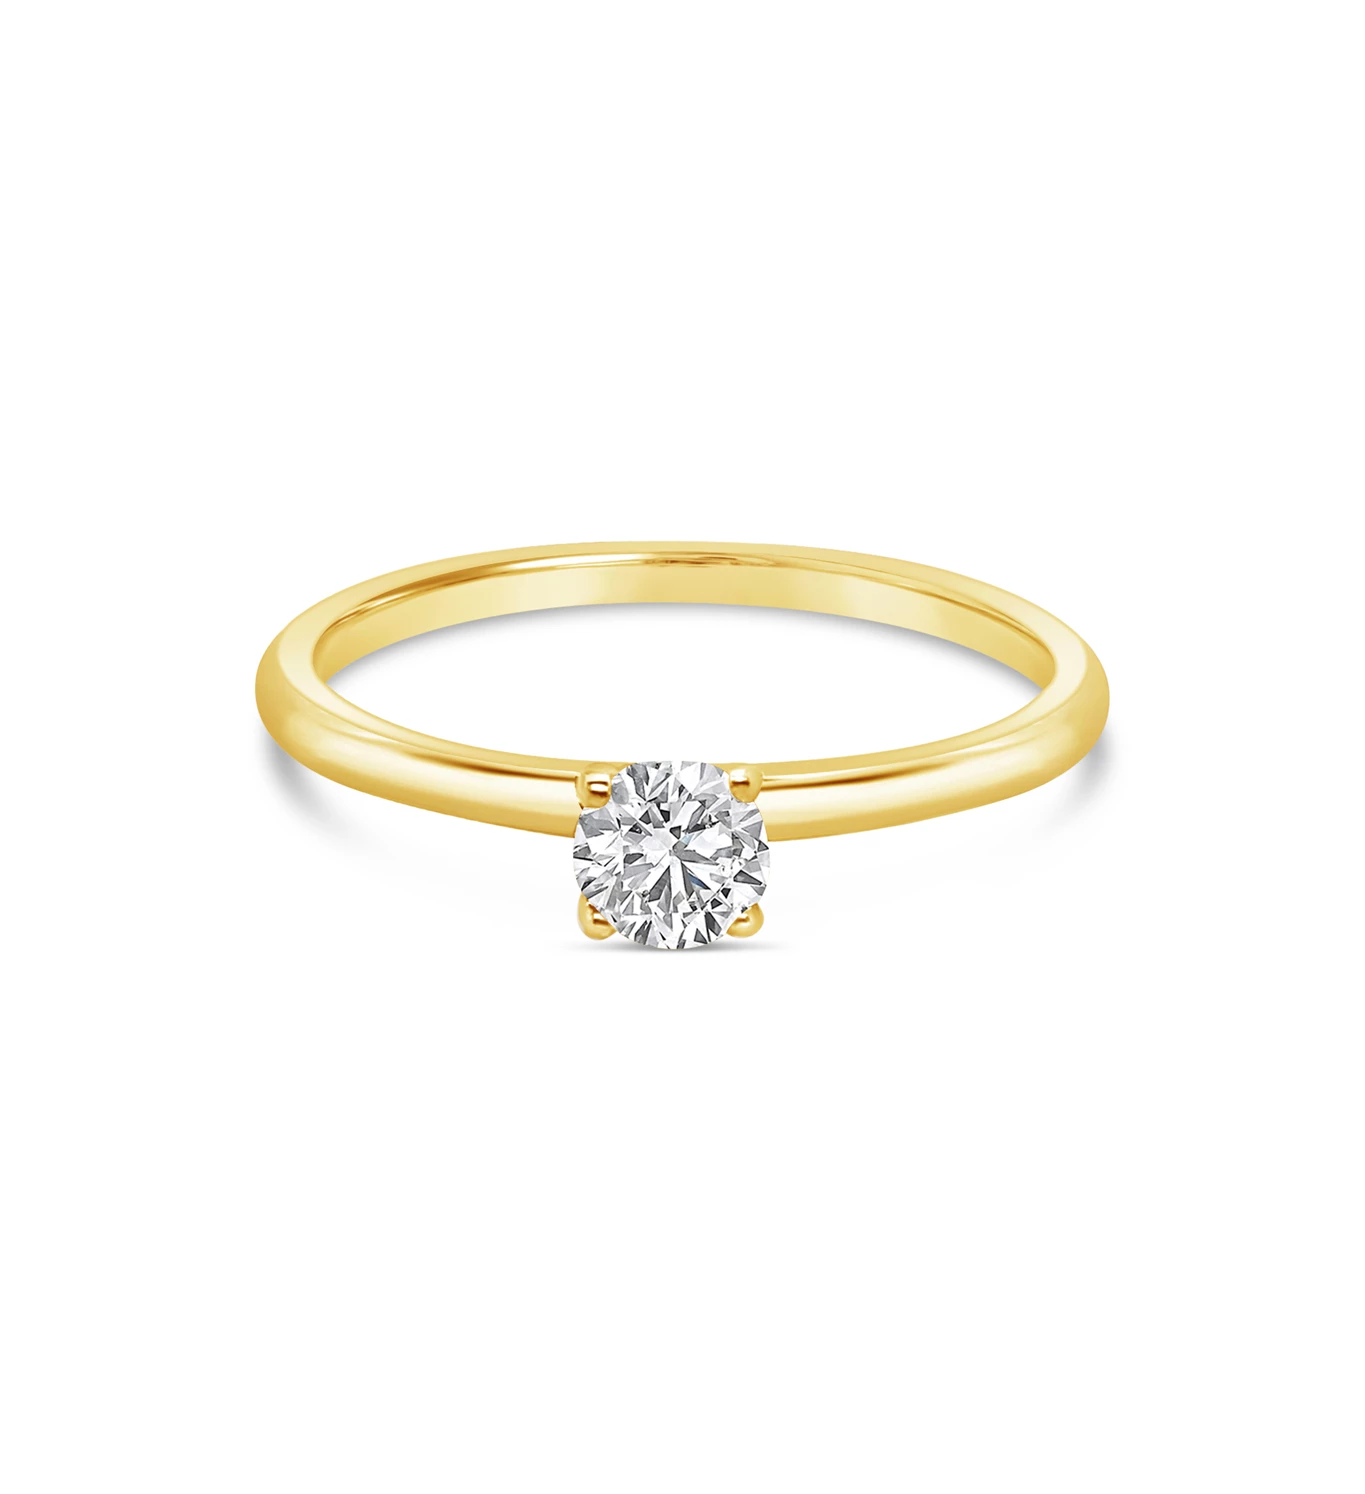 Special zlatni prsten s dijamantom